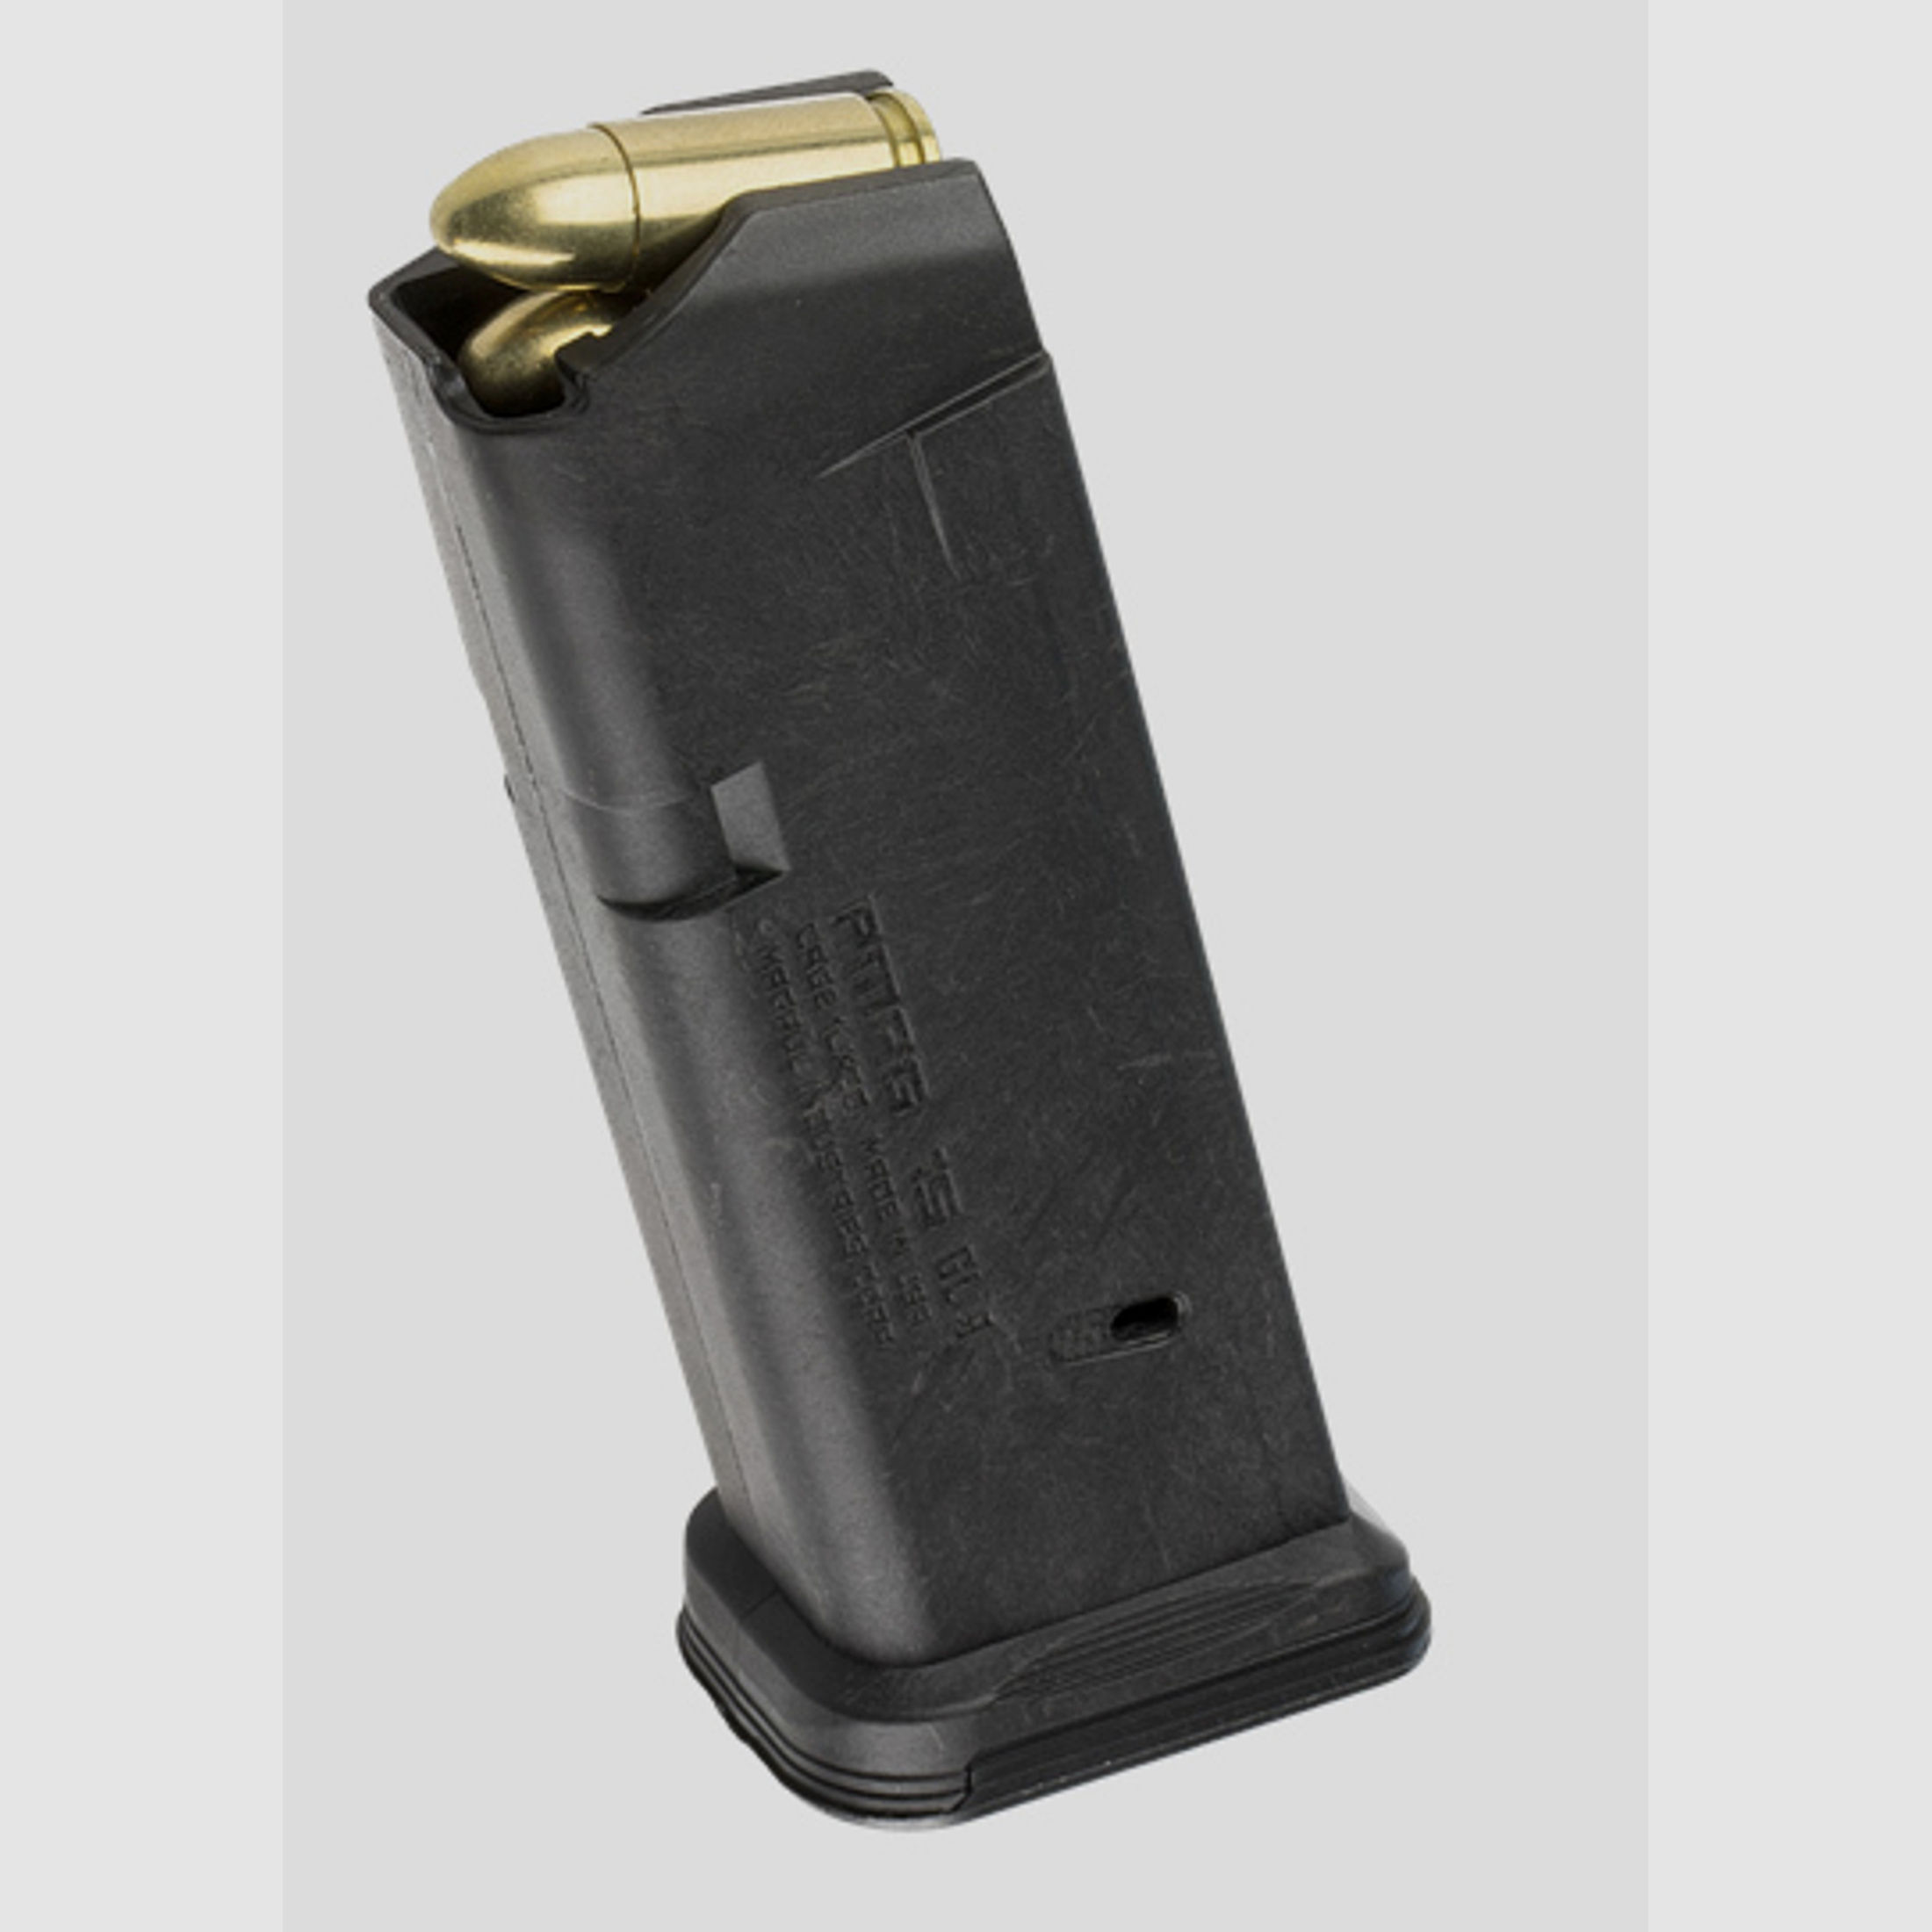 Glock 19 Magazin Kal. 9mm Luger